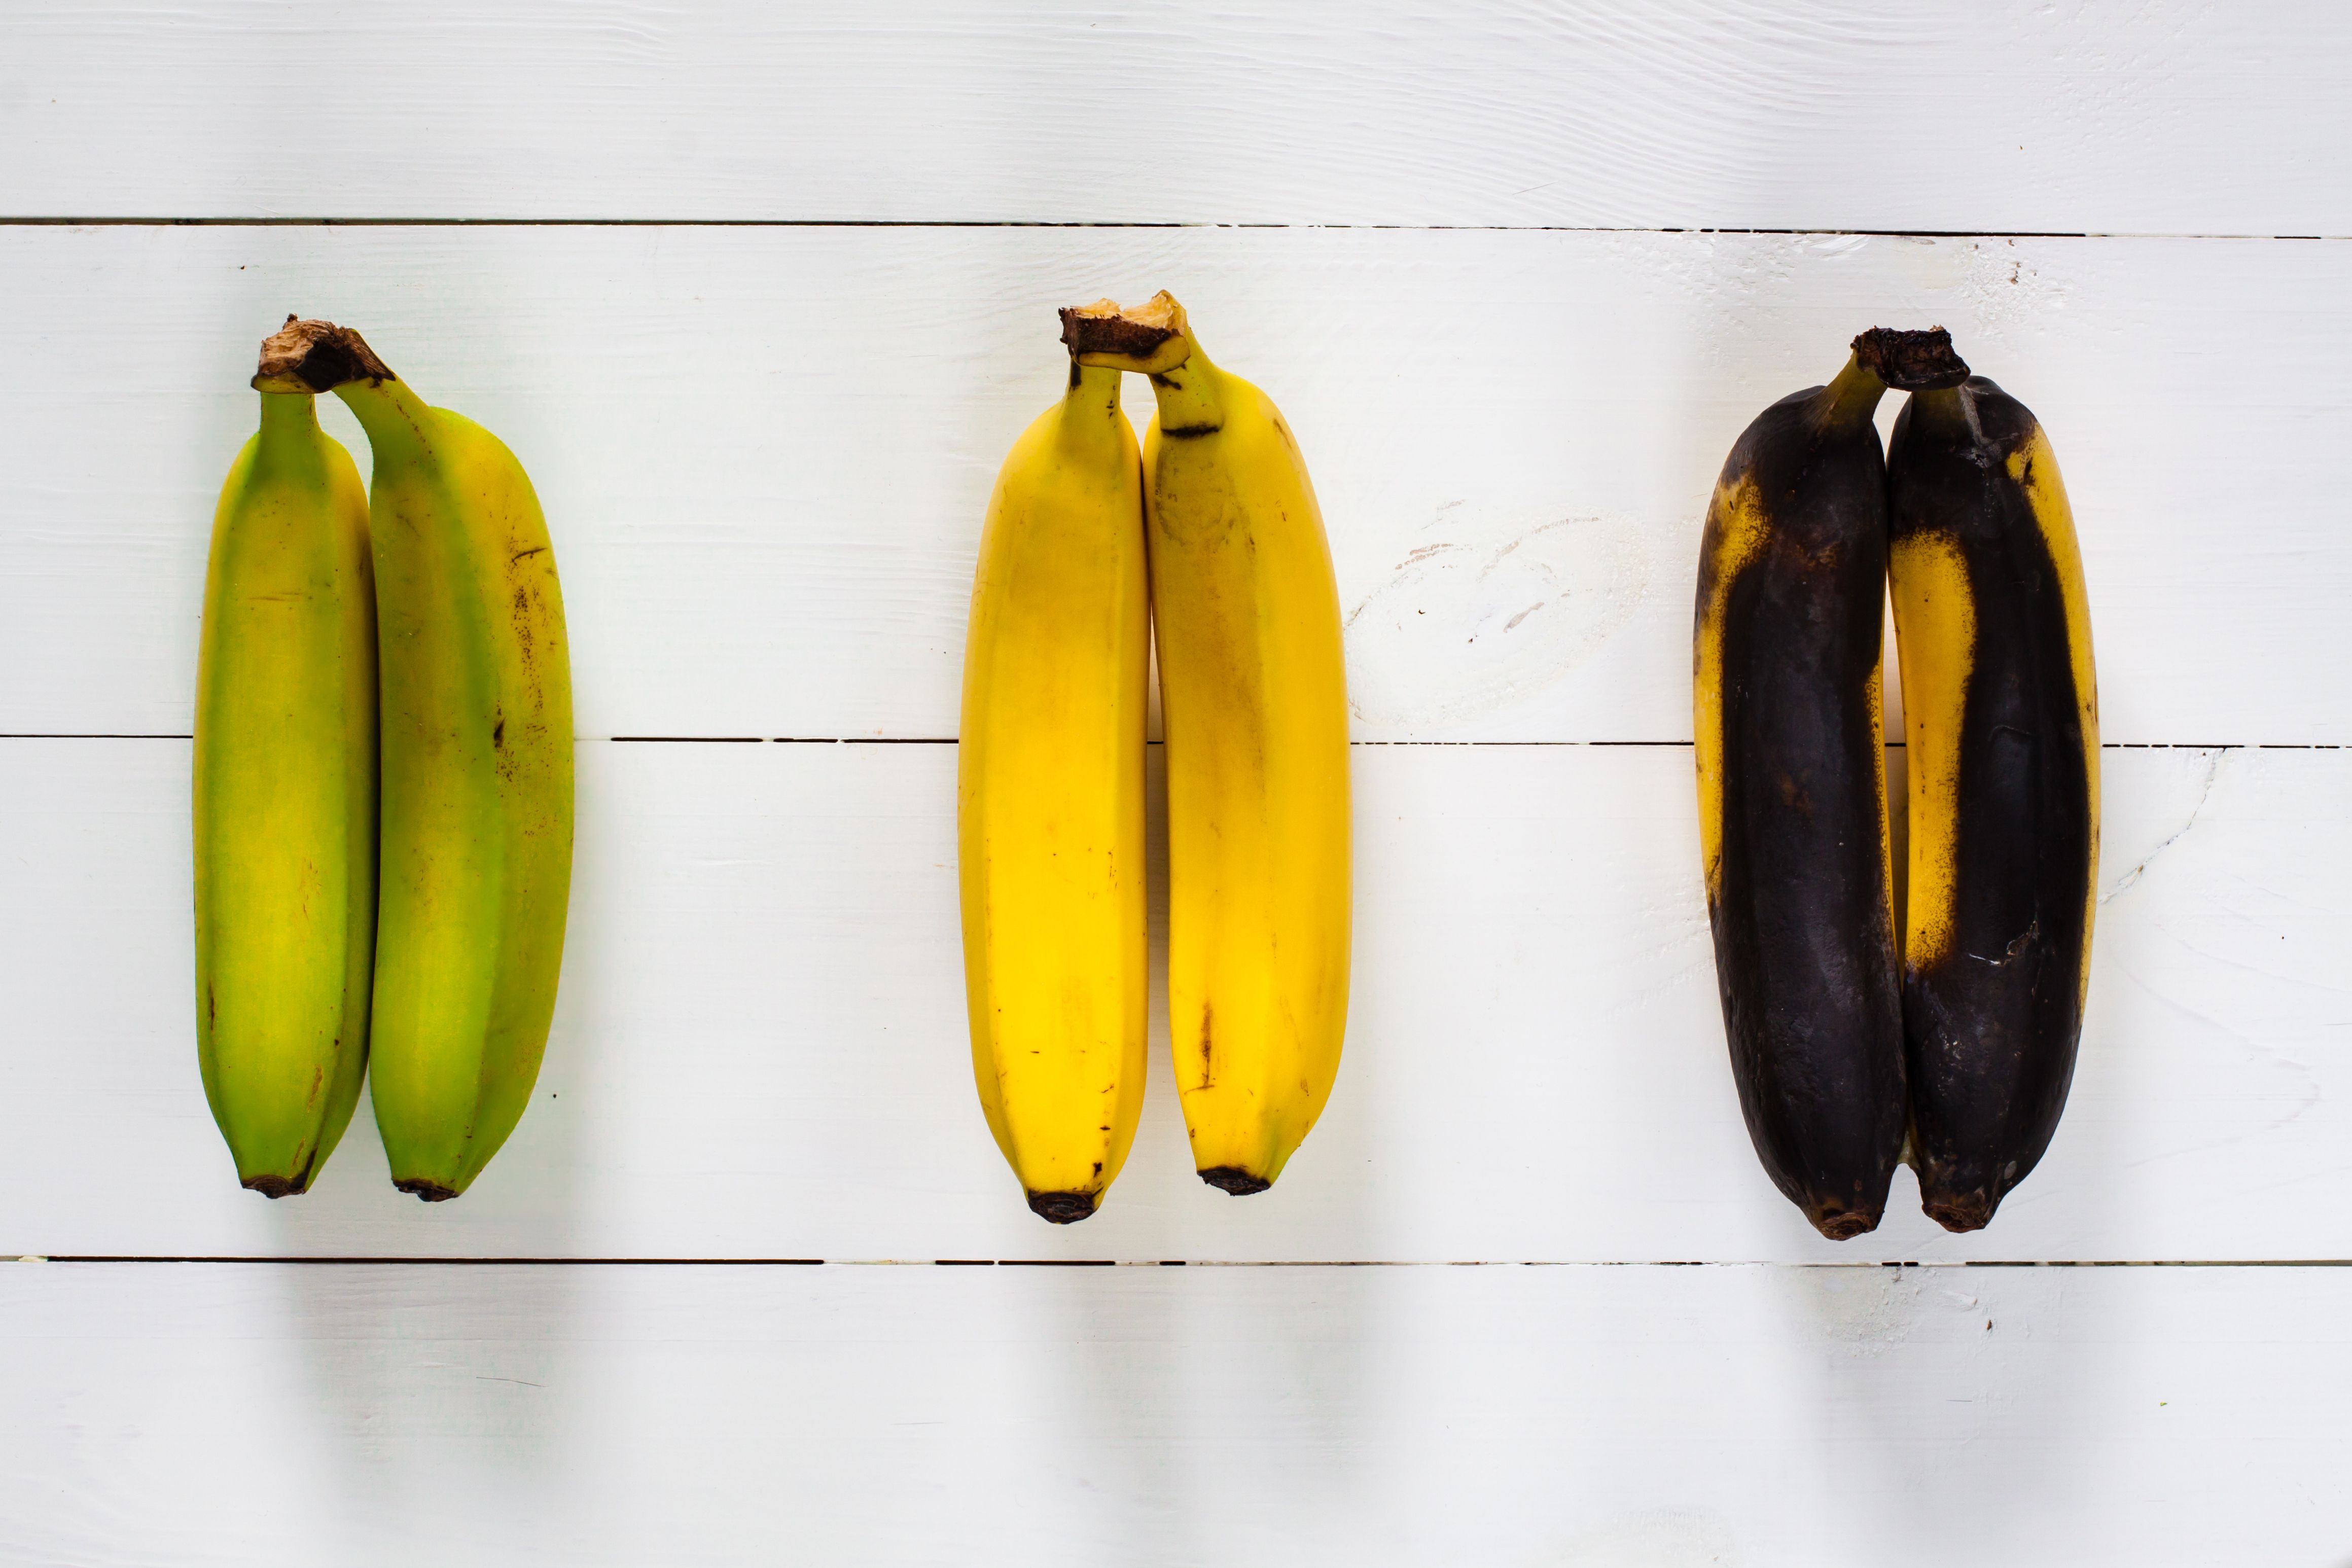 Бананы какой зрелости запрещено выставлять